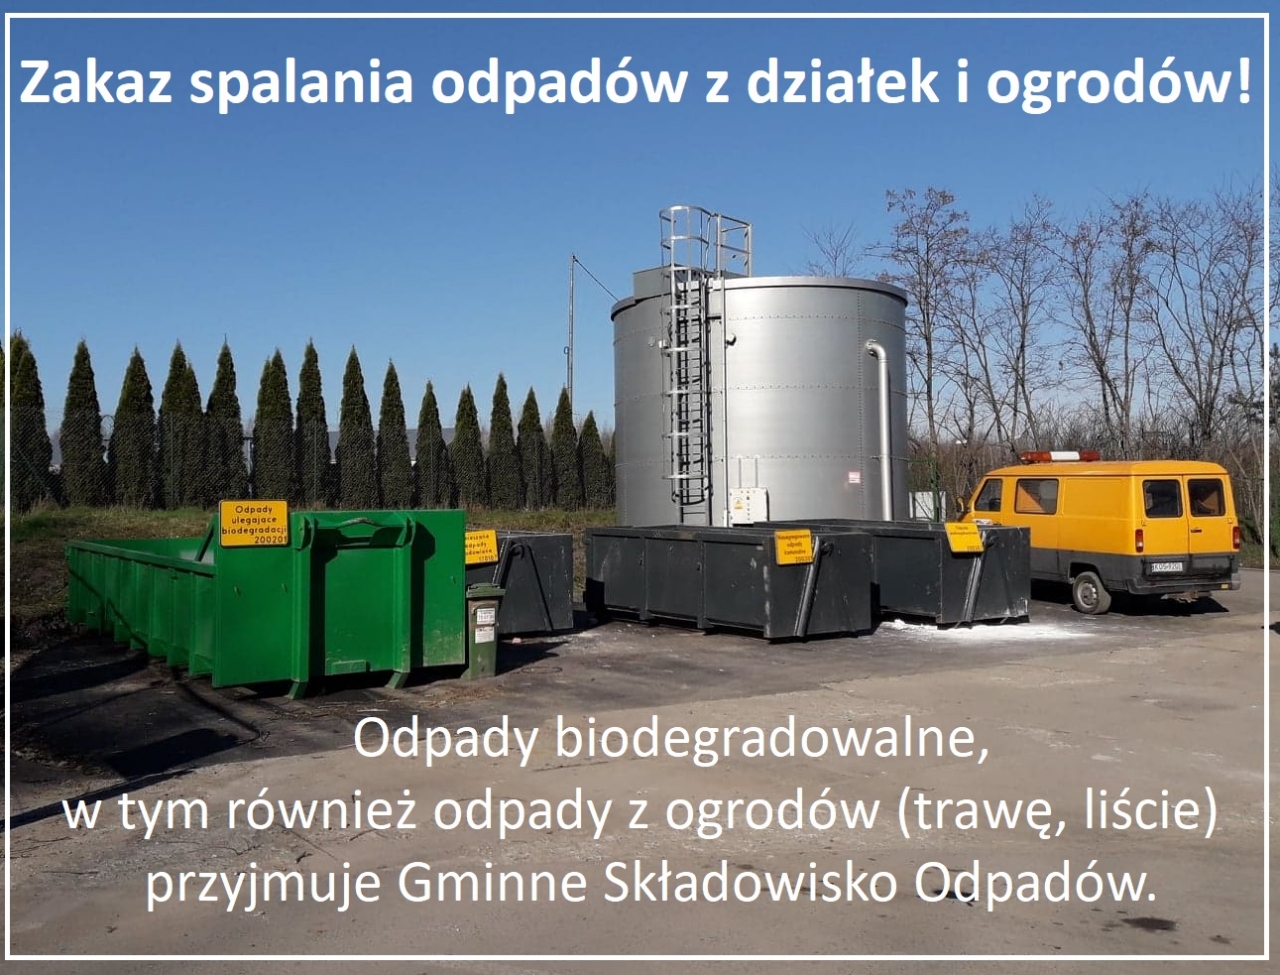 kontenery na odpady biodegradowalne wystawione przy Gminnym Składowisku Odpadów